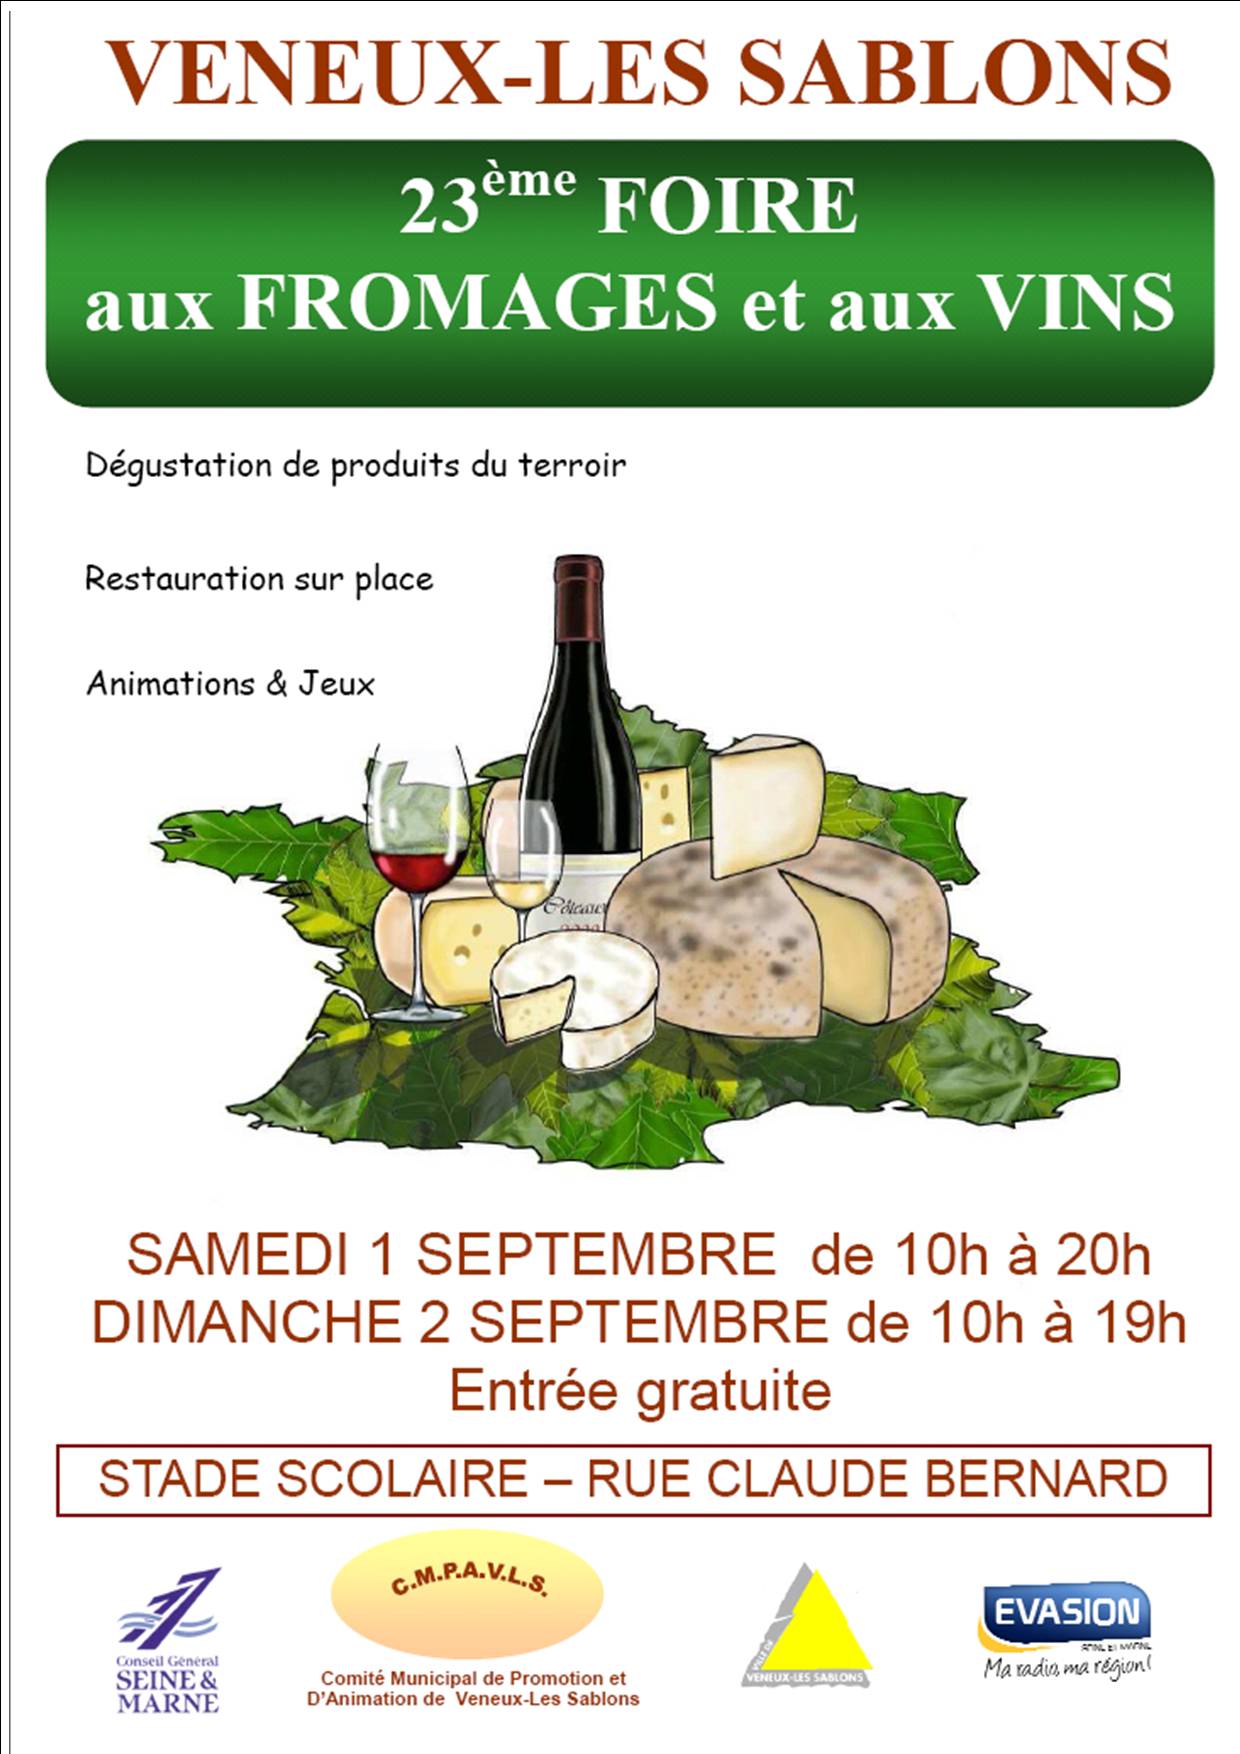 23ème Foire aux Fromages et aux Vins à Veneux les sablons Septembre 2012